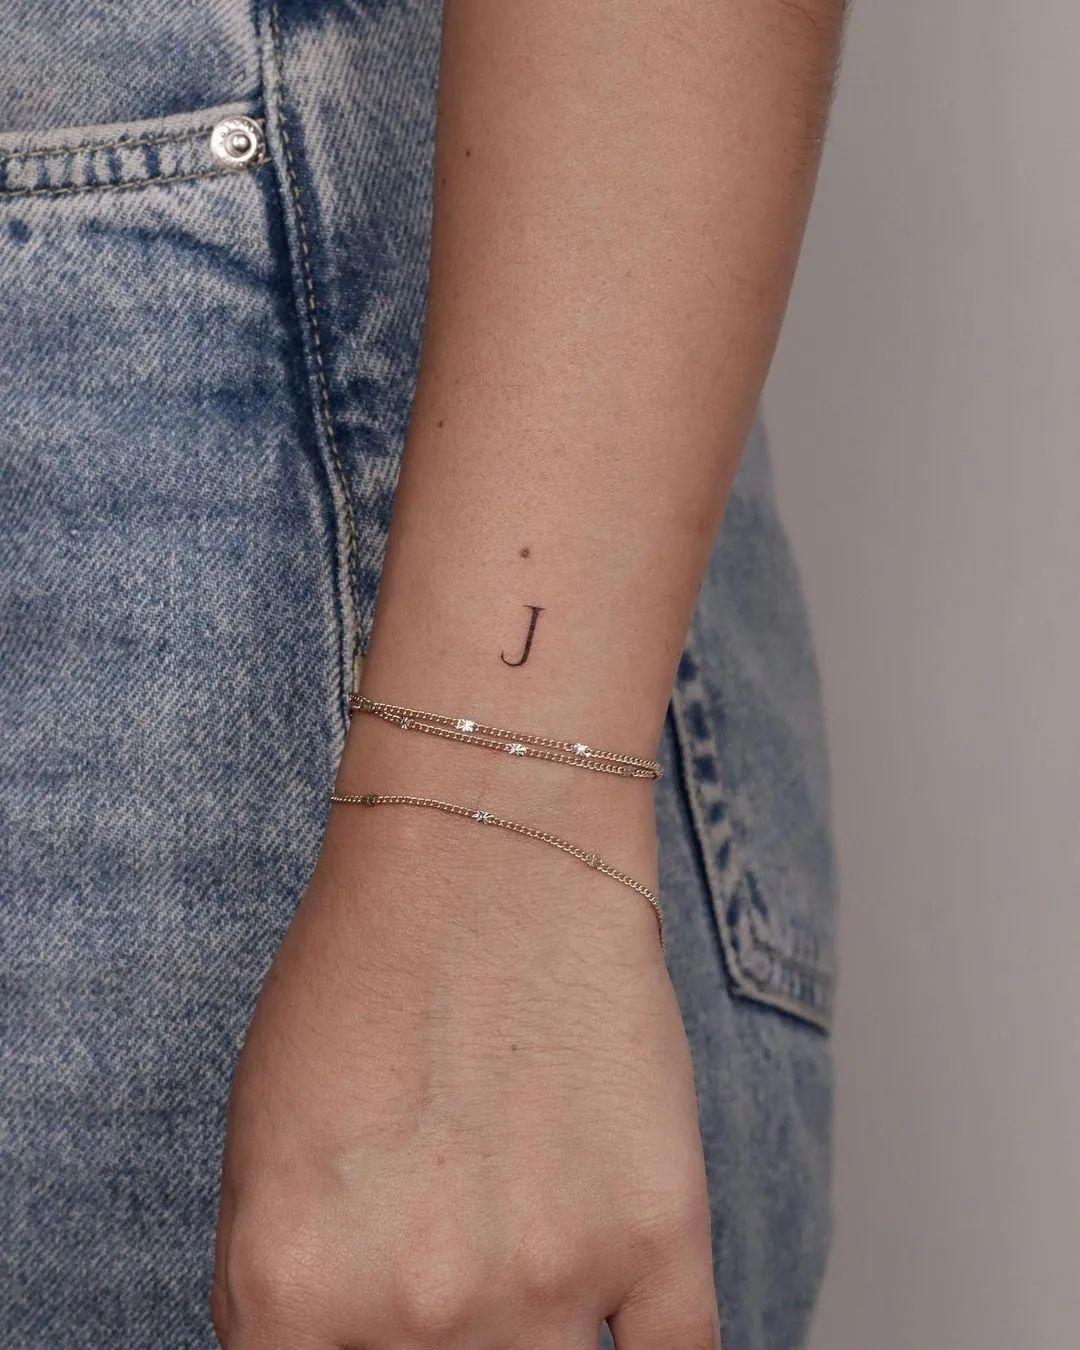 Tatuaje de una J en el antebrazo